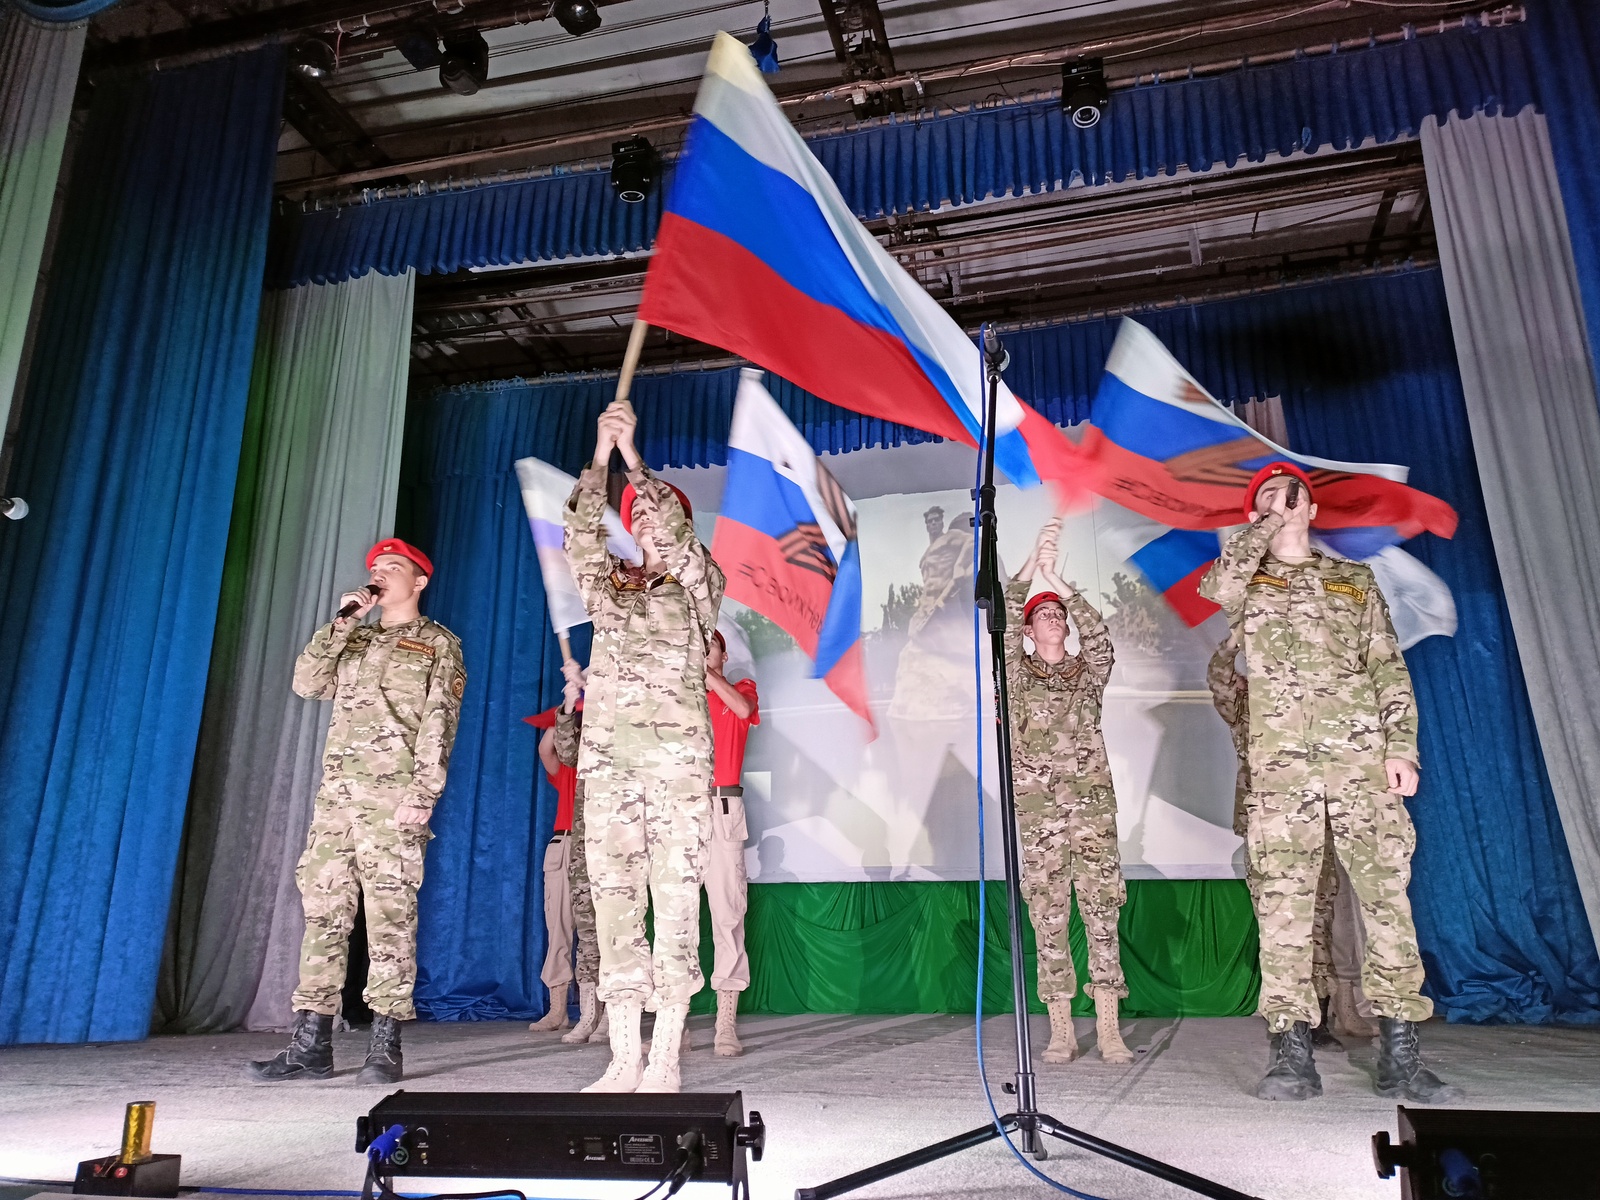 Флаги на концерте развевались под патриотичные песни о России, солдатах и победе. / Фото: Анастасия Аверина